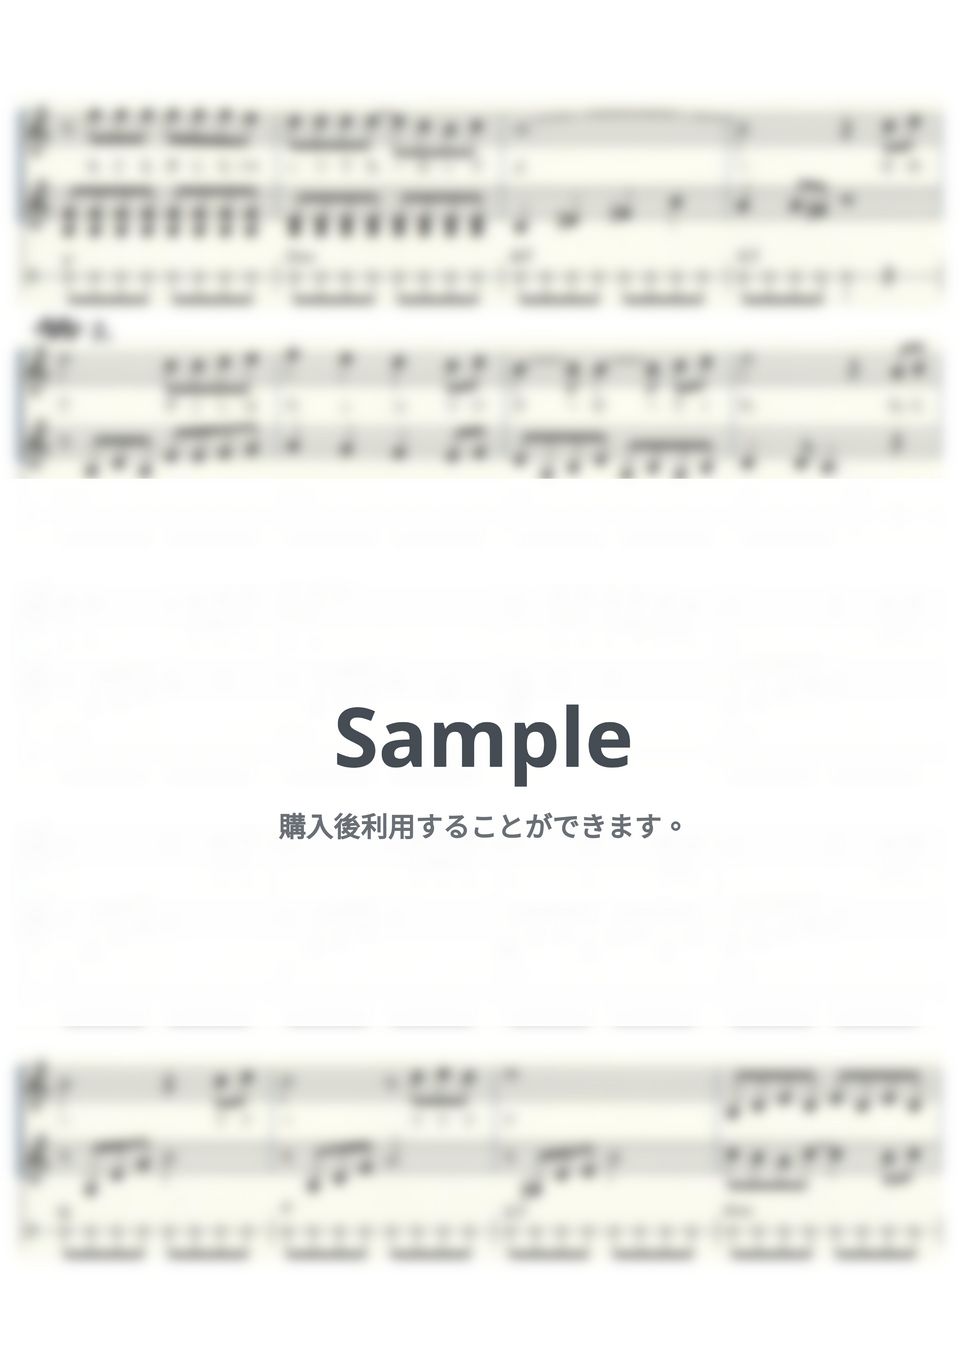 沢田研二 - 勝手にしやがれ (ｳｸﾚﾚﾄﾘｵ/High-G・Low-G/中級) by ukulelepapa